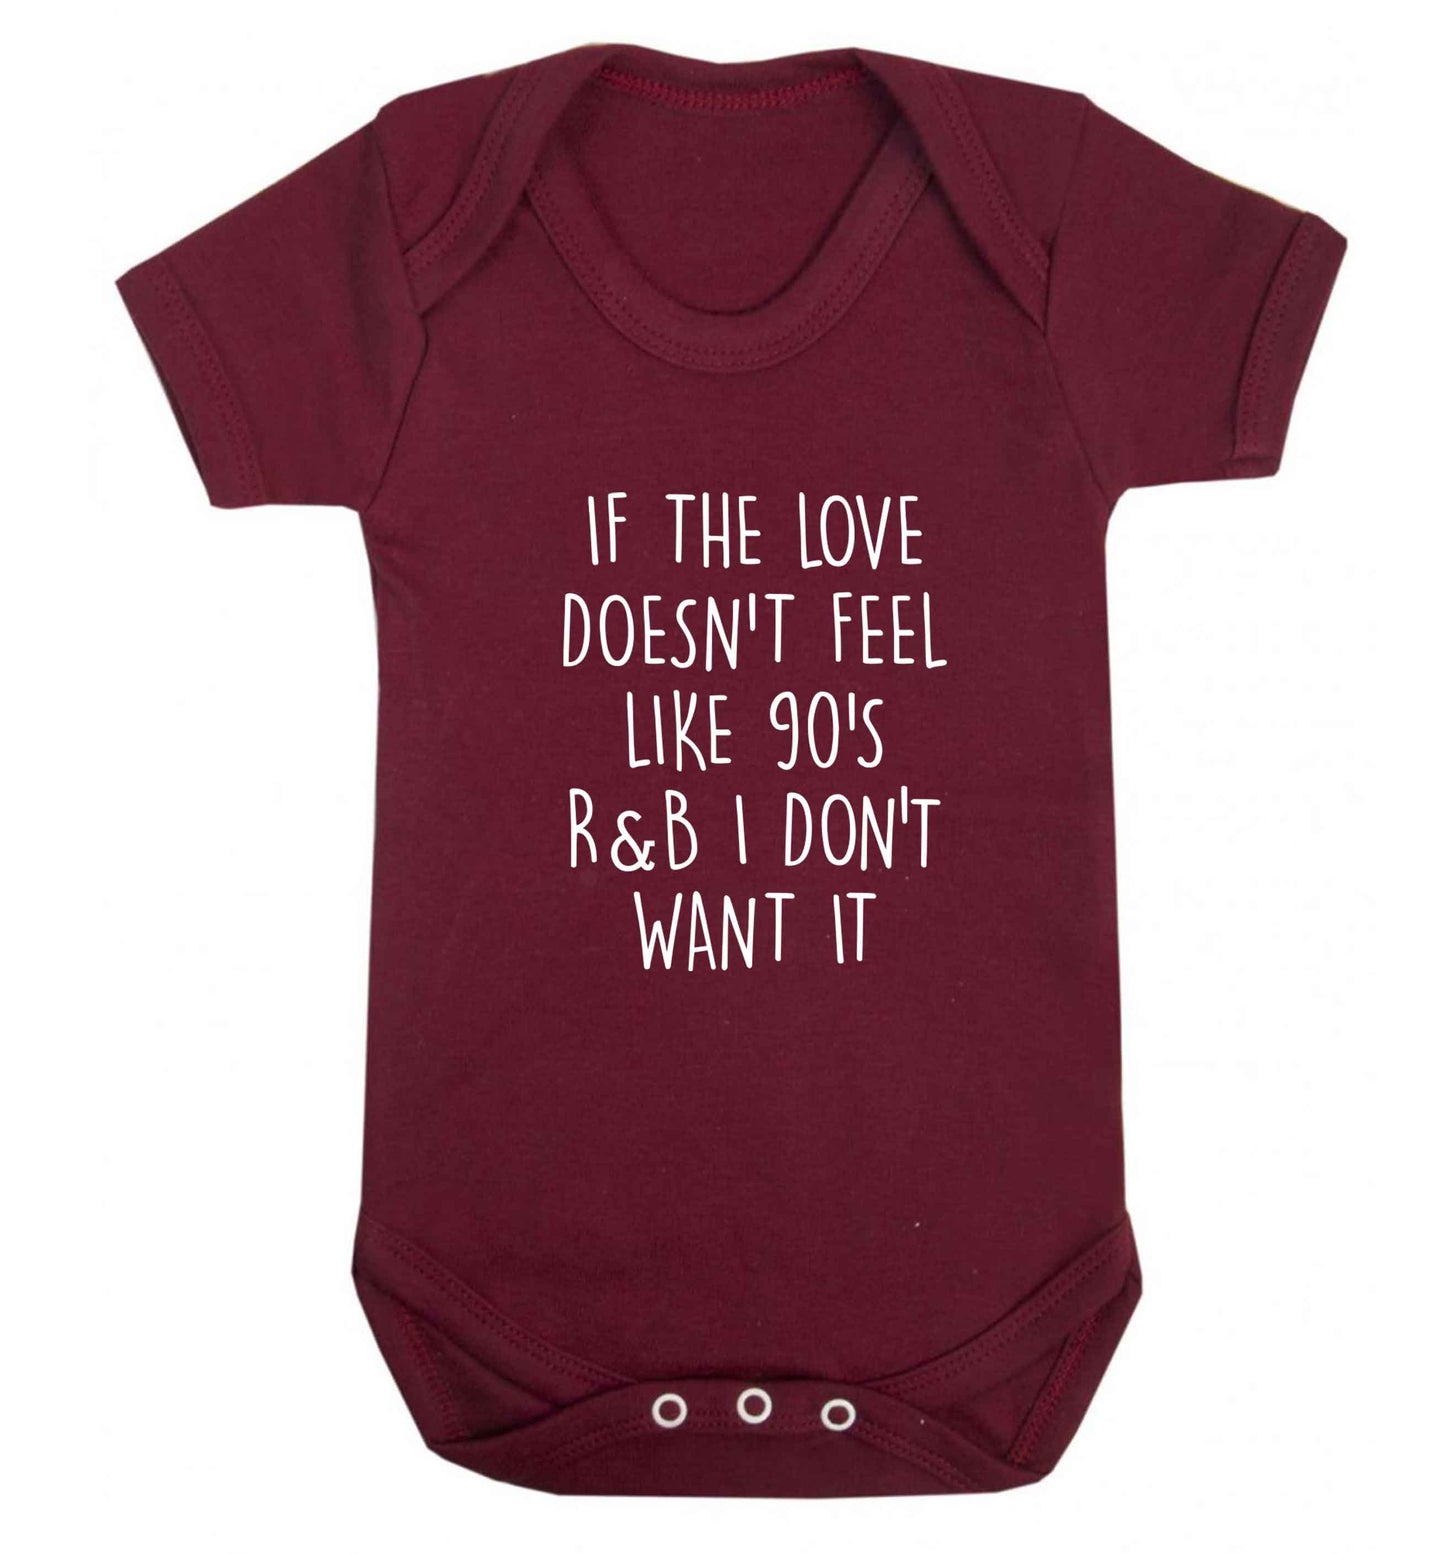 If the love doesn't feel like 90's r&b I don't want it baby vest maroon 18-24 months